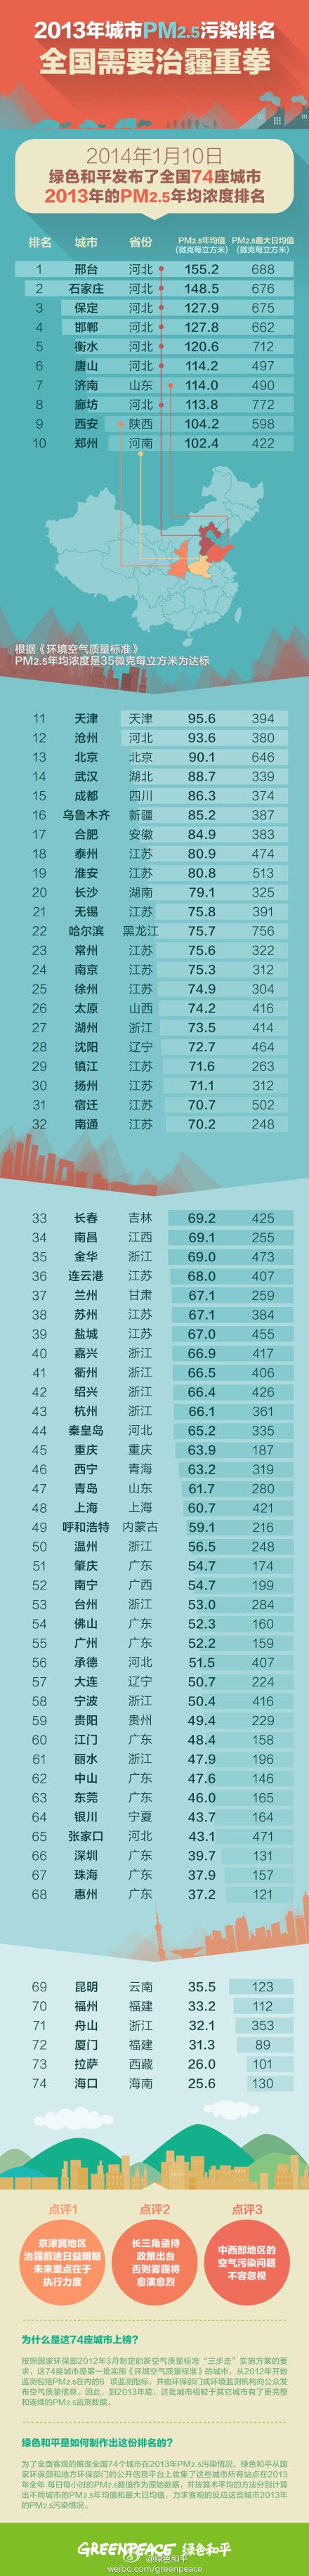 (miniature) PM2.5 : Les villes les plus polluées de Chine en 2013